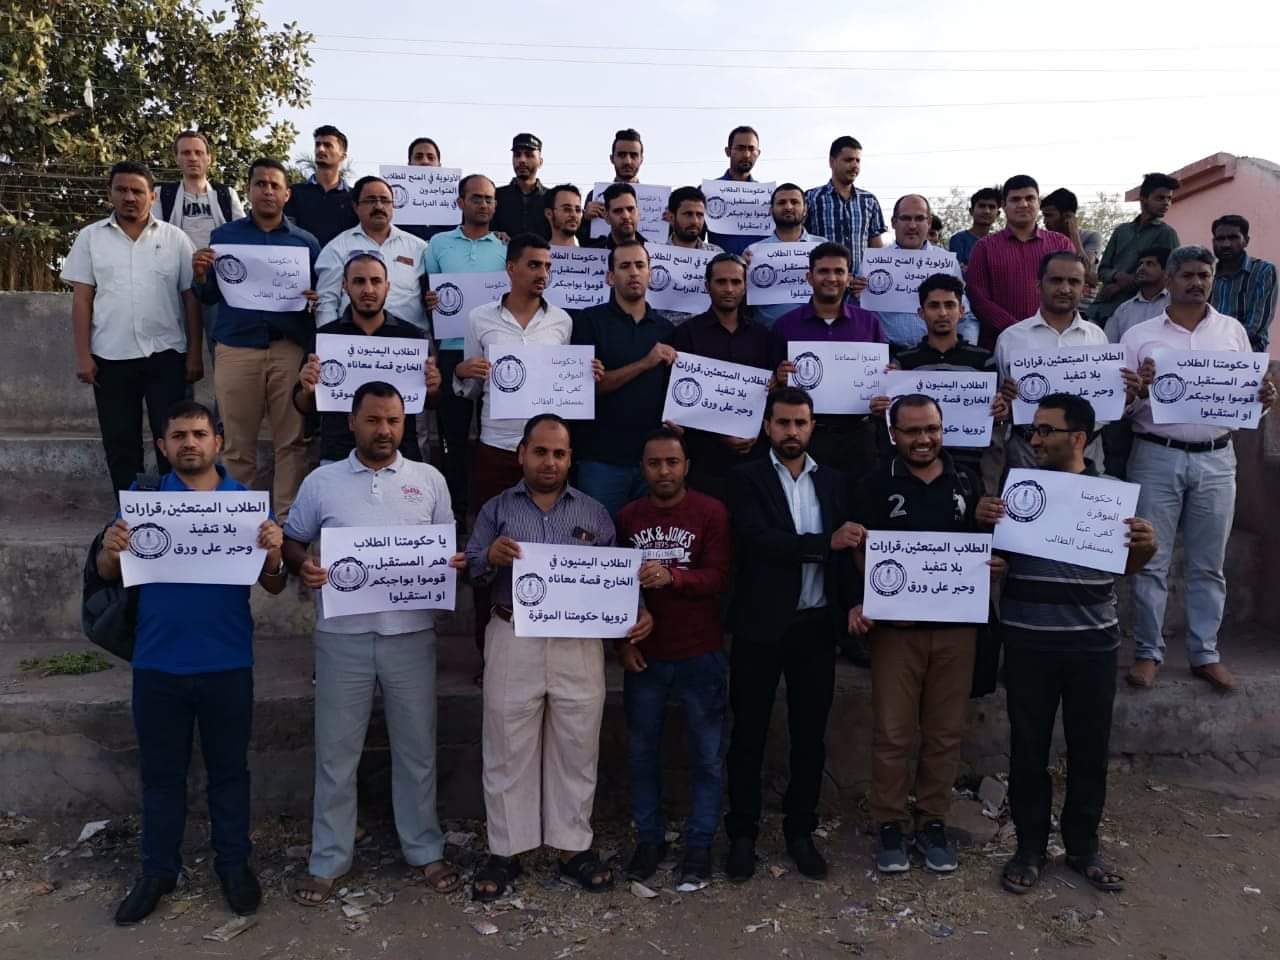 وقفة احتجاجية للطلاب اليمنيين في الهند تضامناً مع زملائهم الذين تم إسقاطهم من الكشوفات